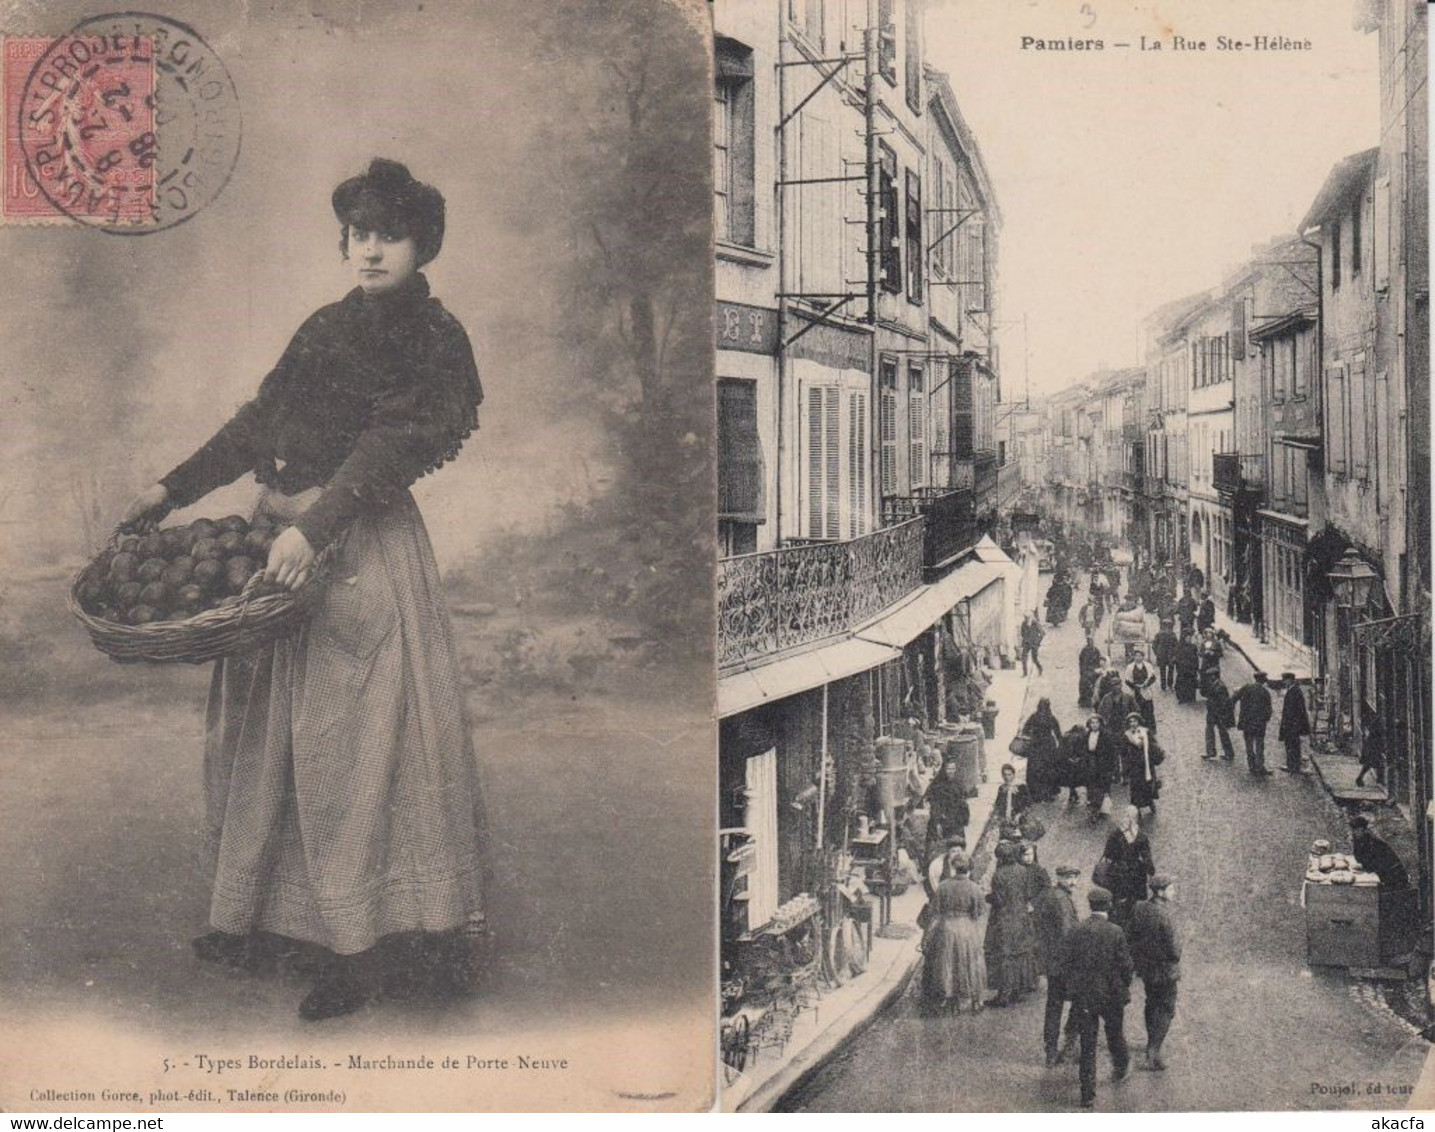 MARKETS MARCHE FRANCE 39 Vintage postcards pre-1940 (L5519)